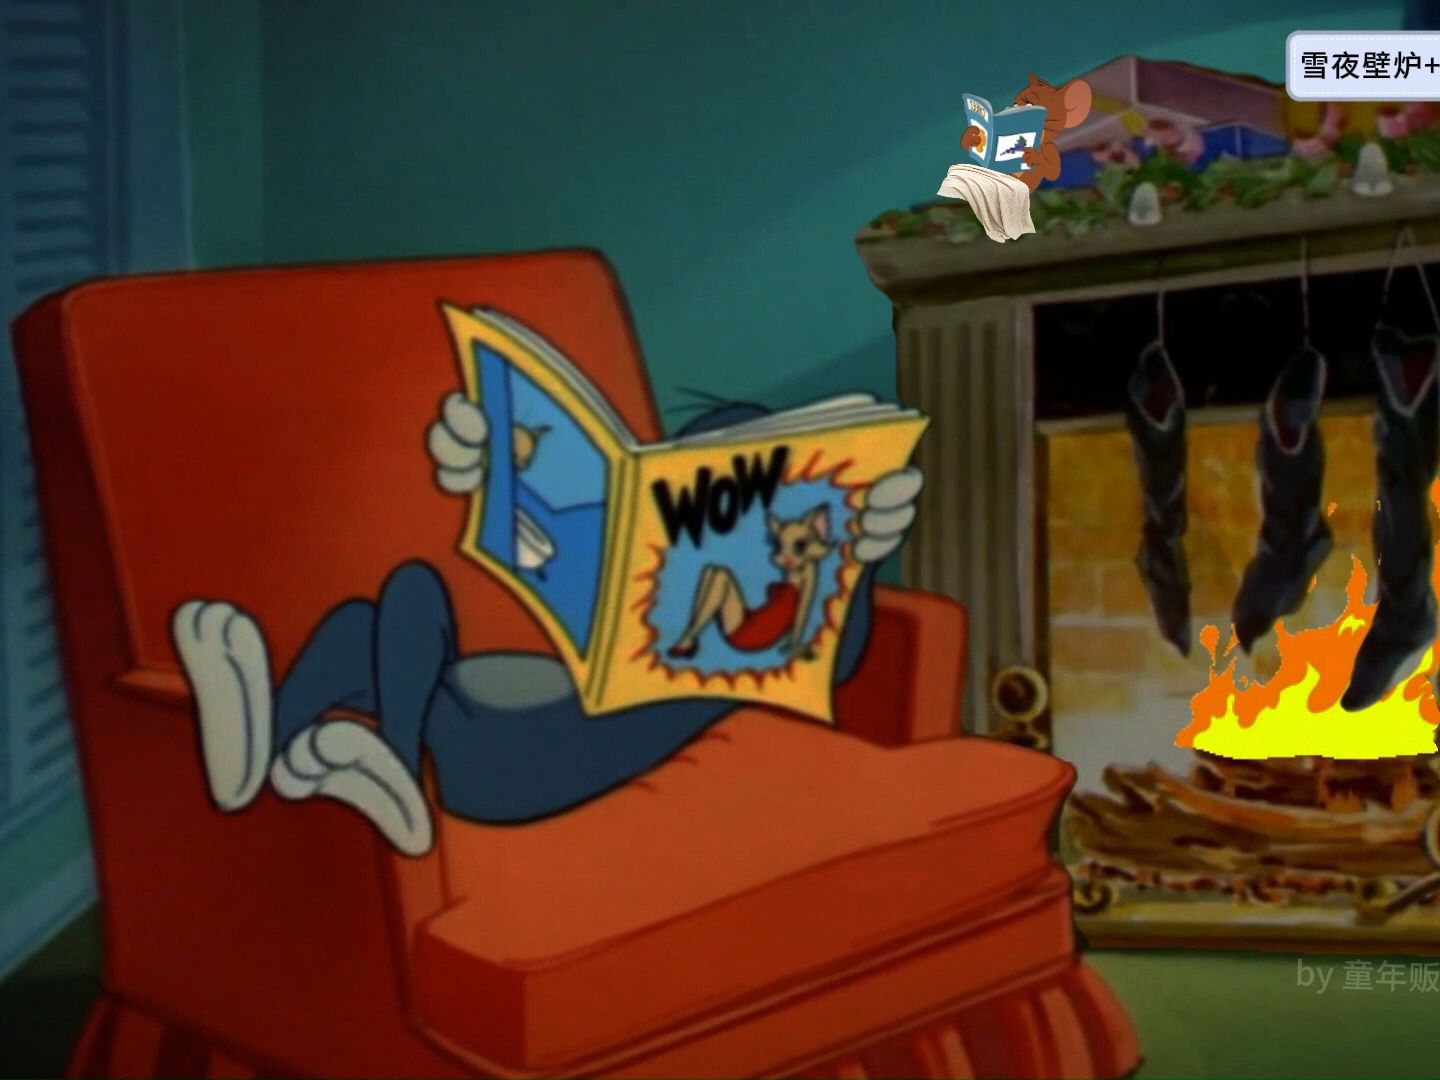 【氛围】雪夜壁炉+爵士乐-汤姆和杰瑞在壁炉旁看杂志；助眠/惬意/放松；猫和老鼠：窗外下雪+柴火燃烧+爵士乐+翻书声